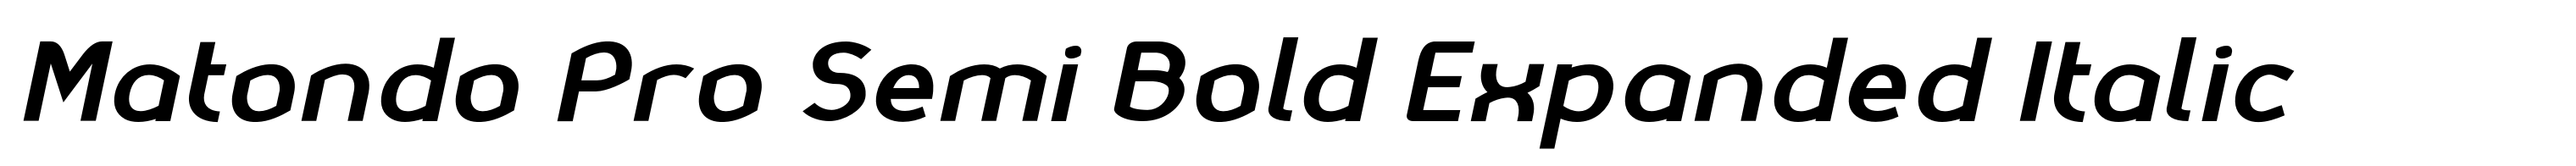 Matondo Pro Semi Bold Expanded Italic